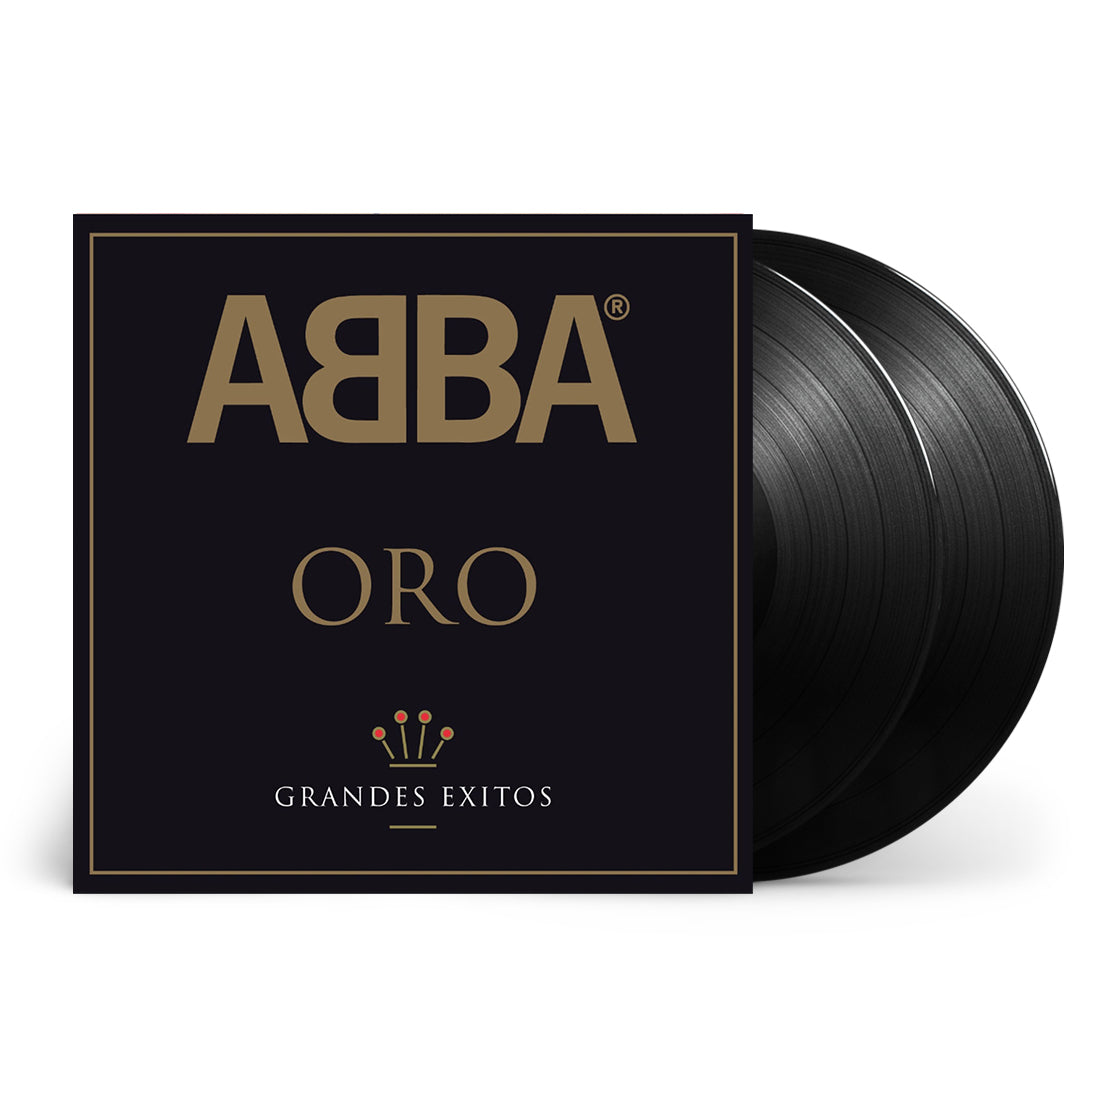 ABBA - Oro - Grandes Éxitos: Vinyl 2LP